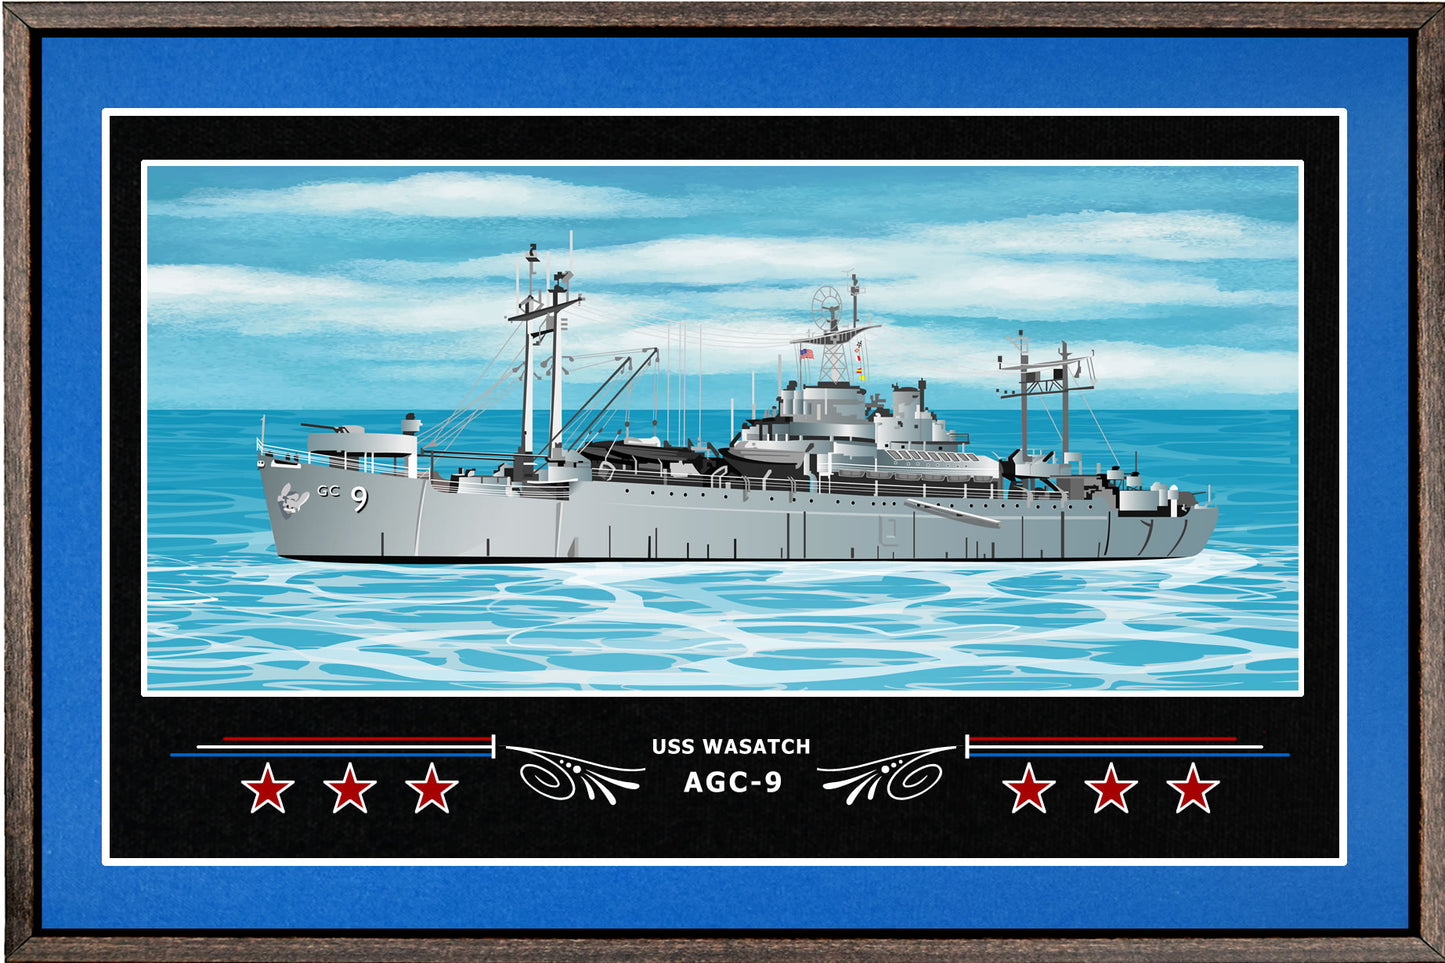 USS WASATCH AGC 9 BOX FRAMED CANVAS ART BLUE